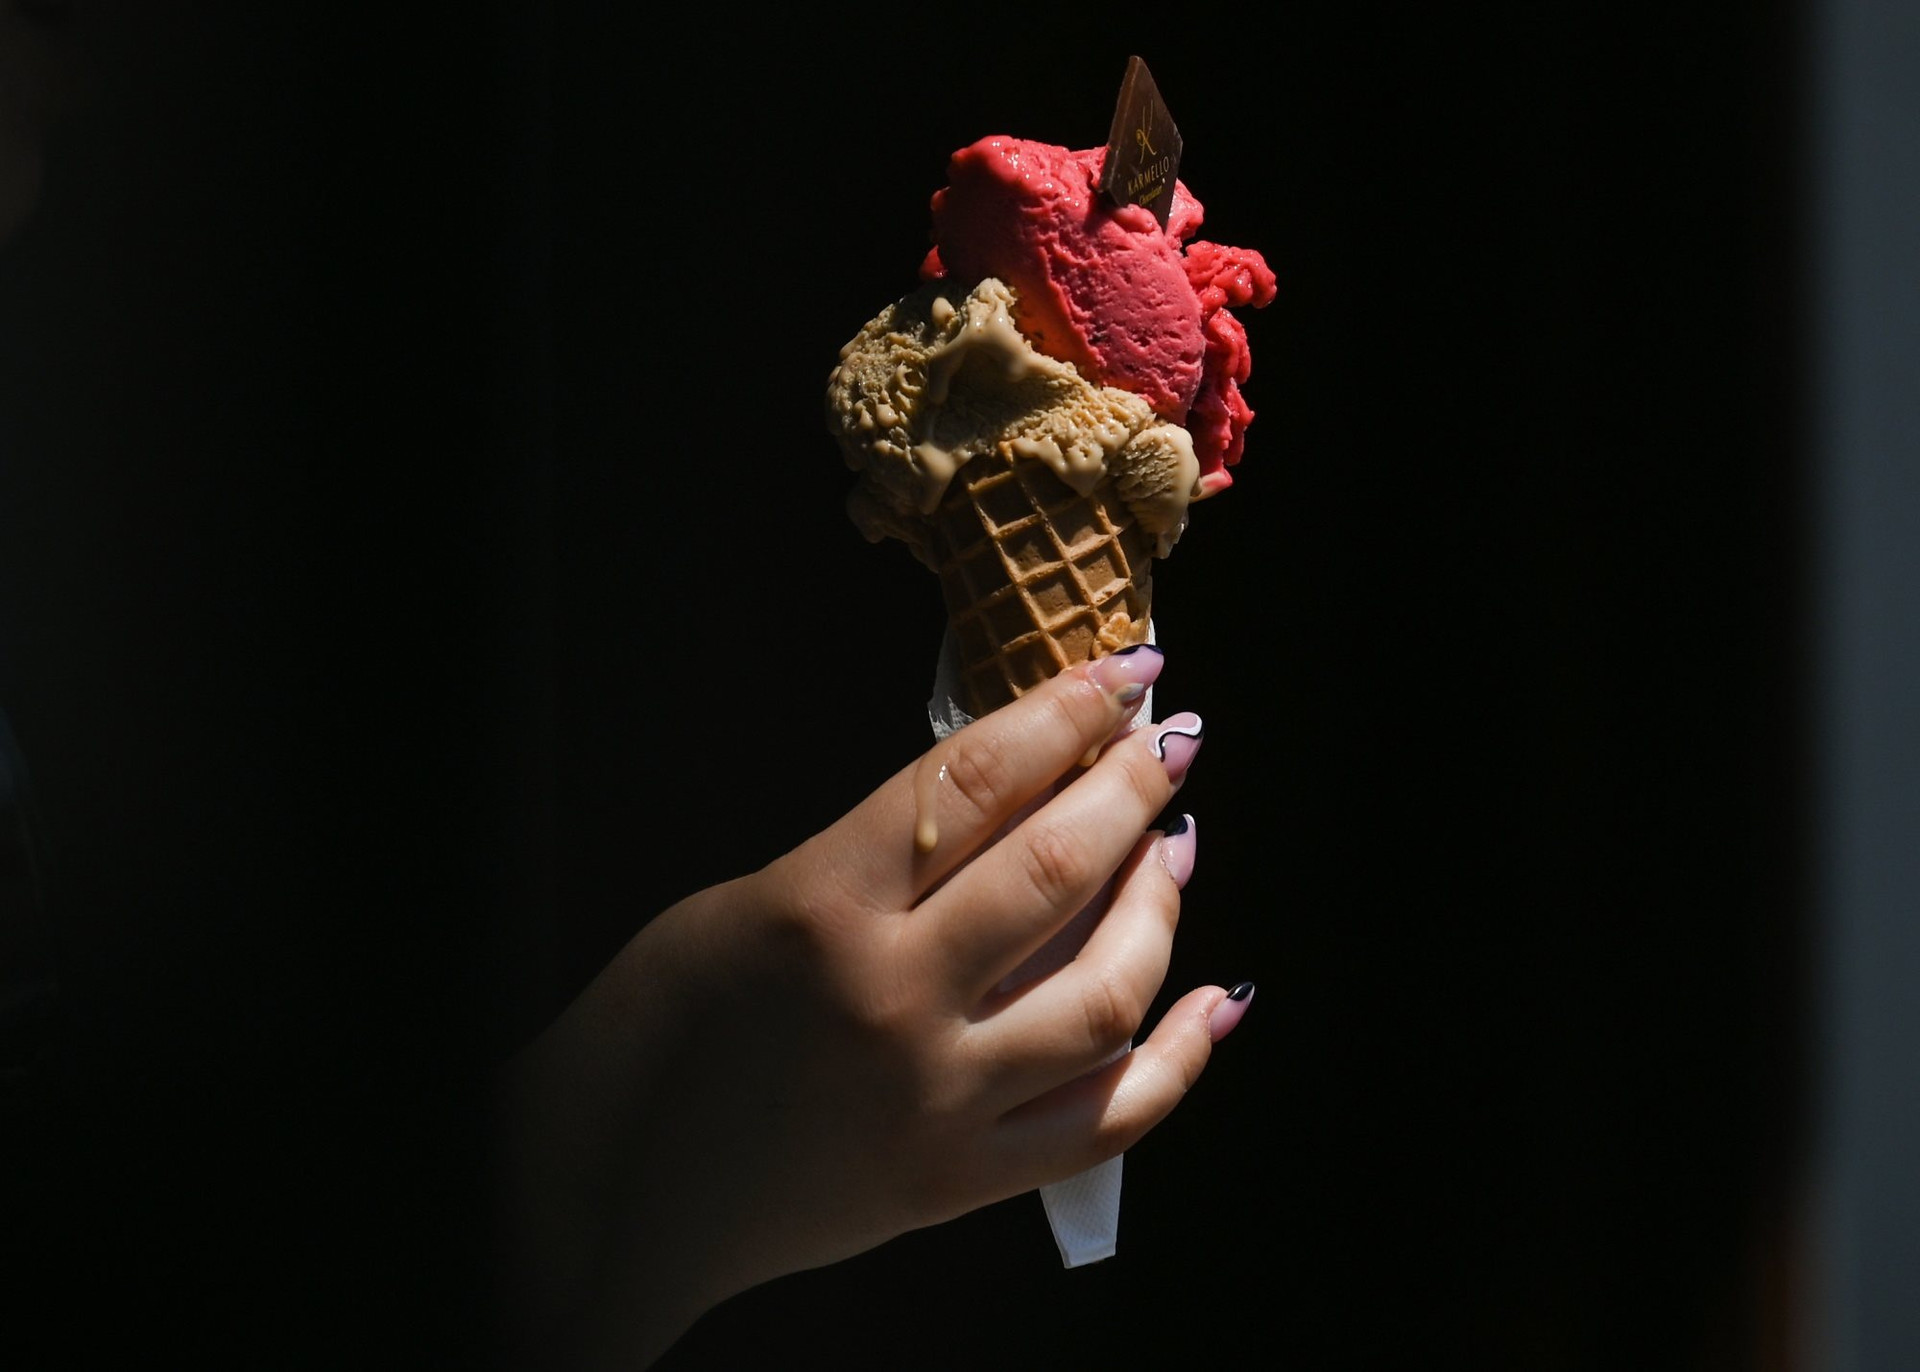 Cơn khát ‘đường’ của châu Âu: Mùa hè buồn với những người dân thích ăn kem